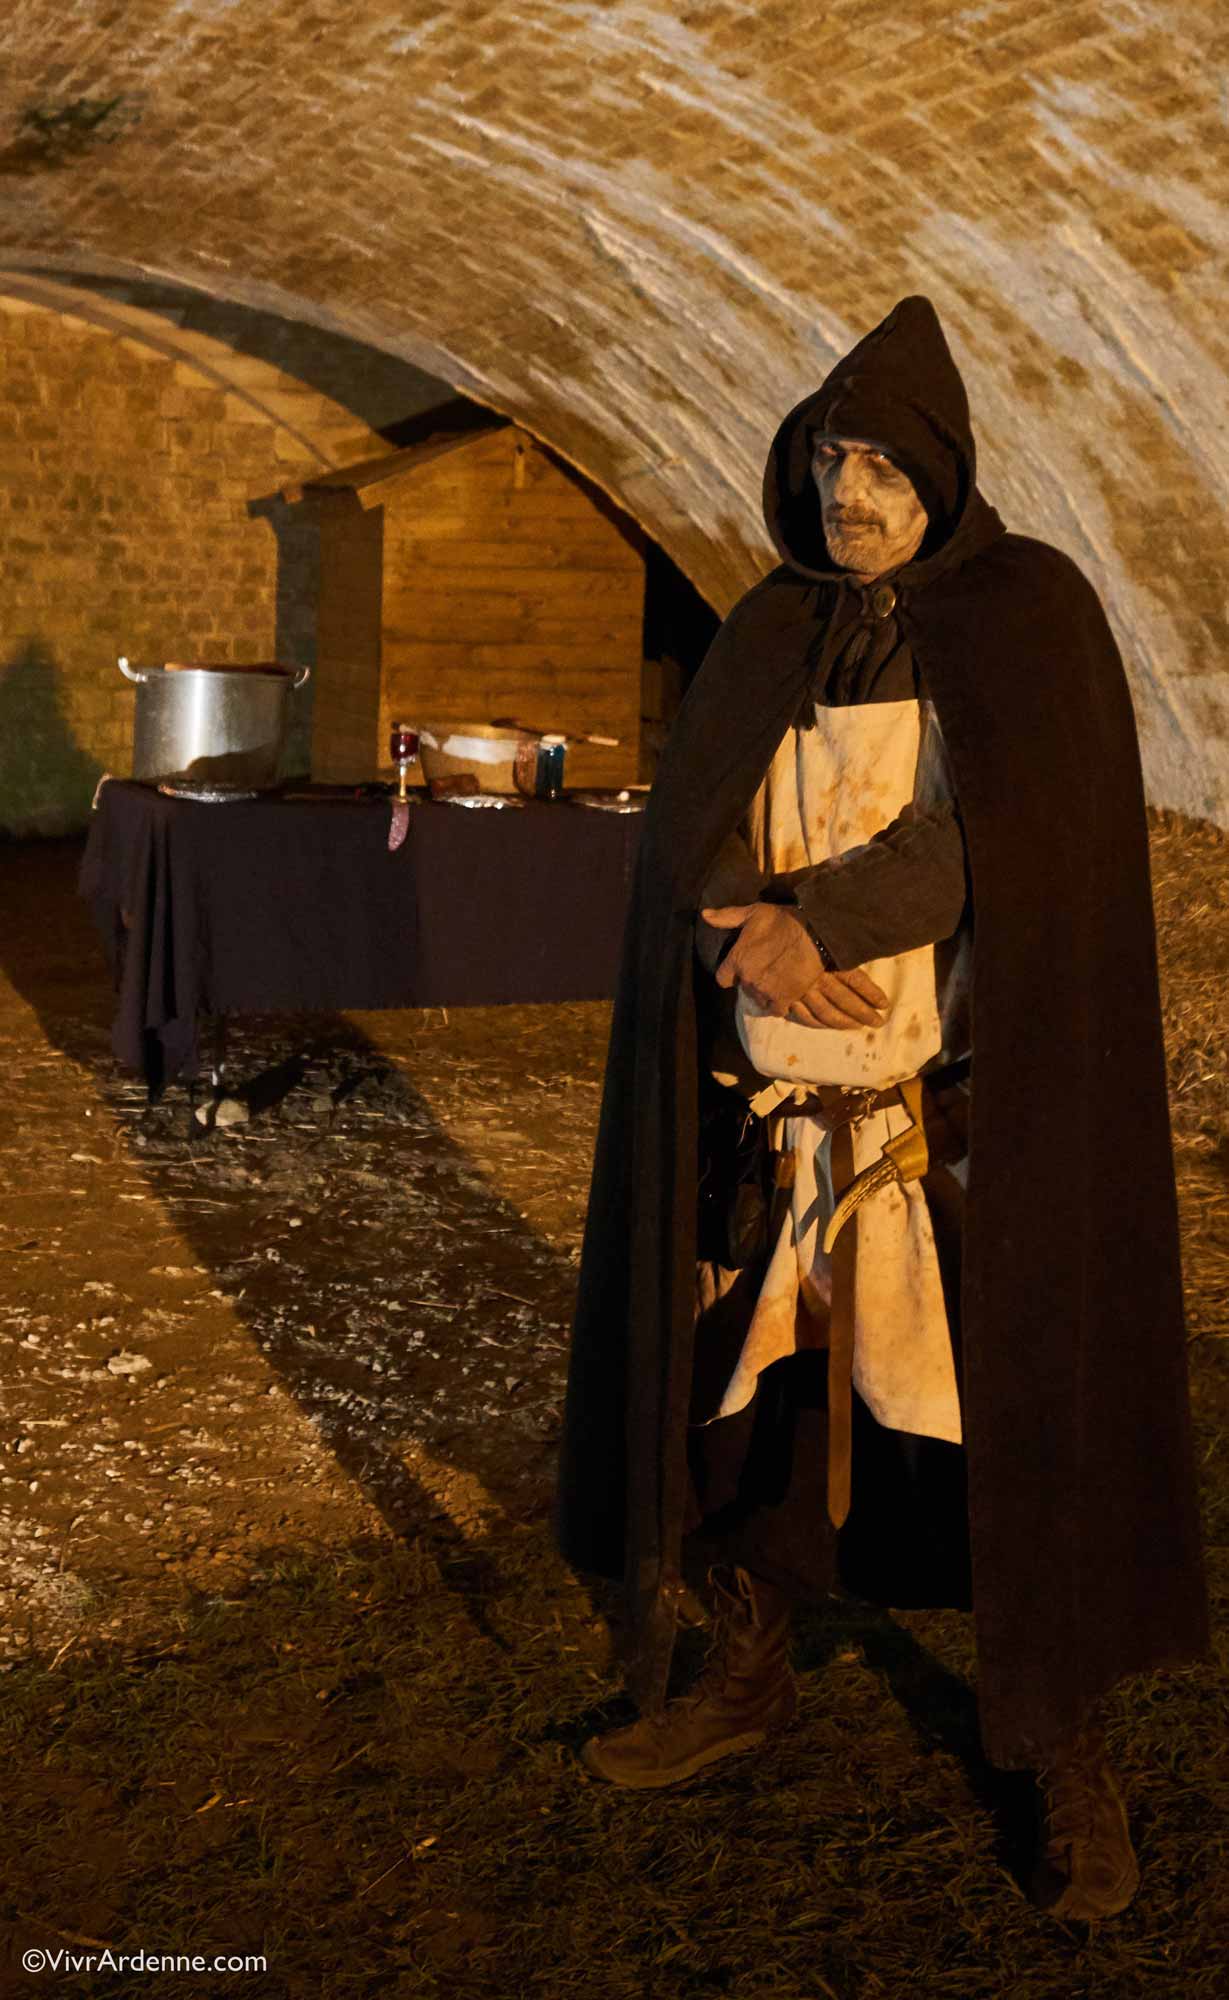 VivrArdenne - Halloween au Château Fort Les reliques du seigneur